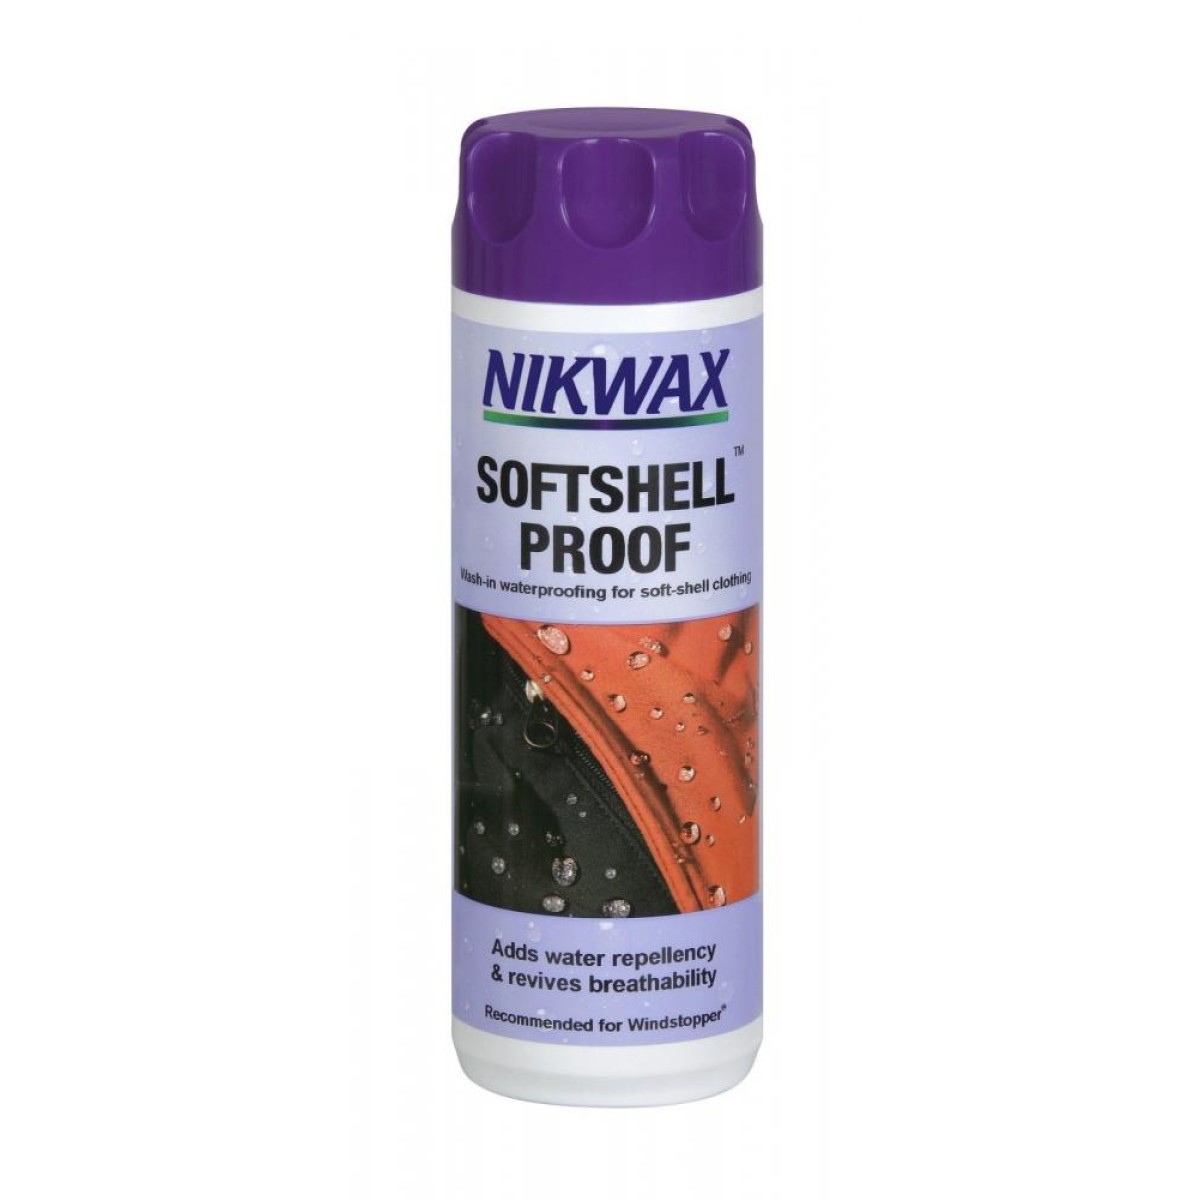 Импрегниращ препарат за облекла Softshell proof -300 ml NIKWAX - изглед 2